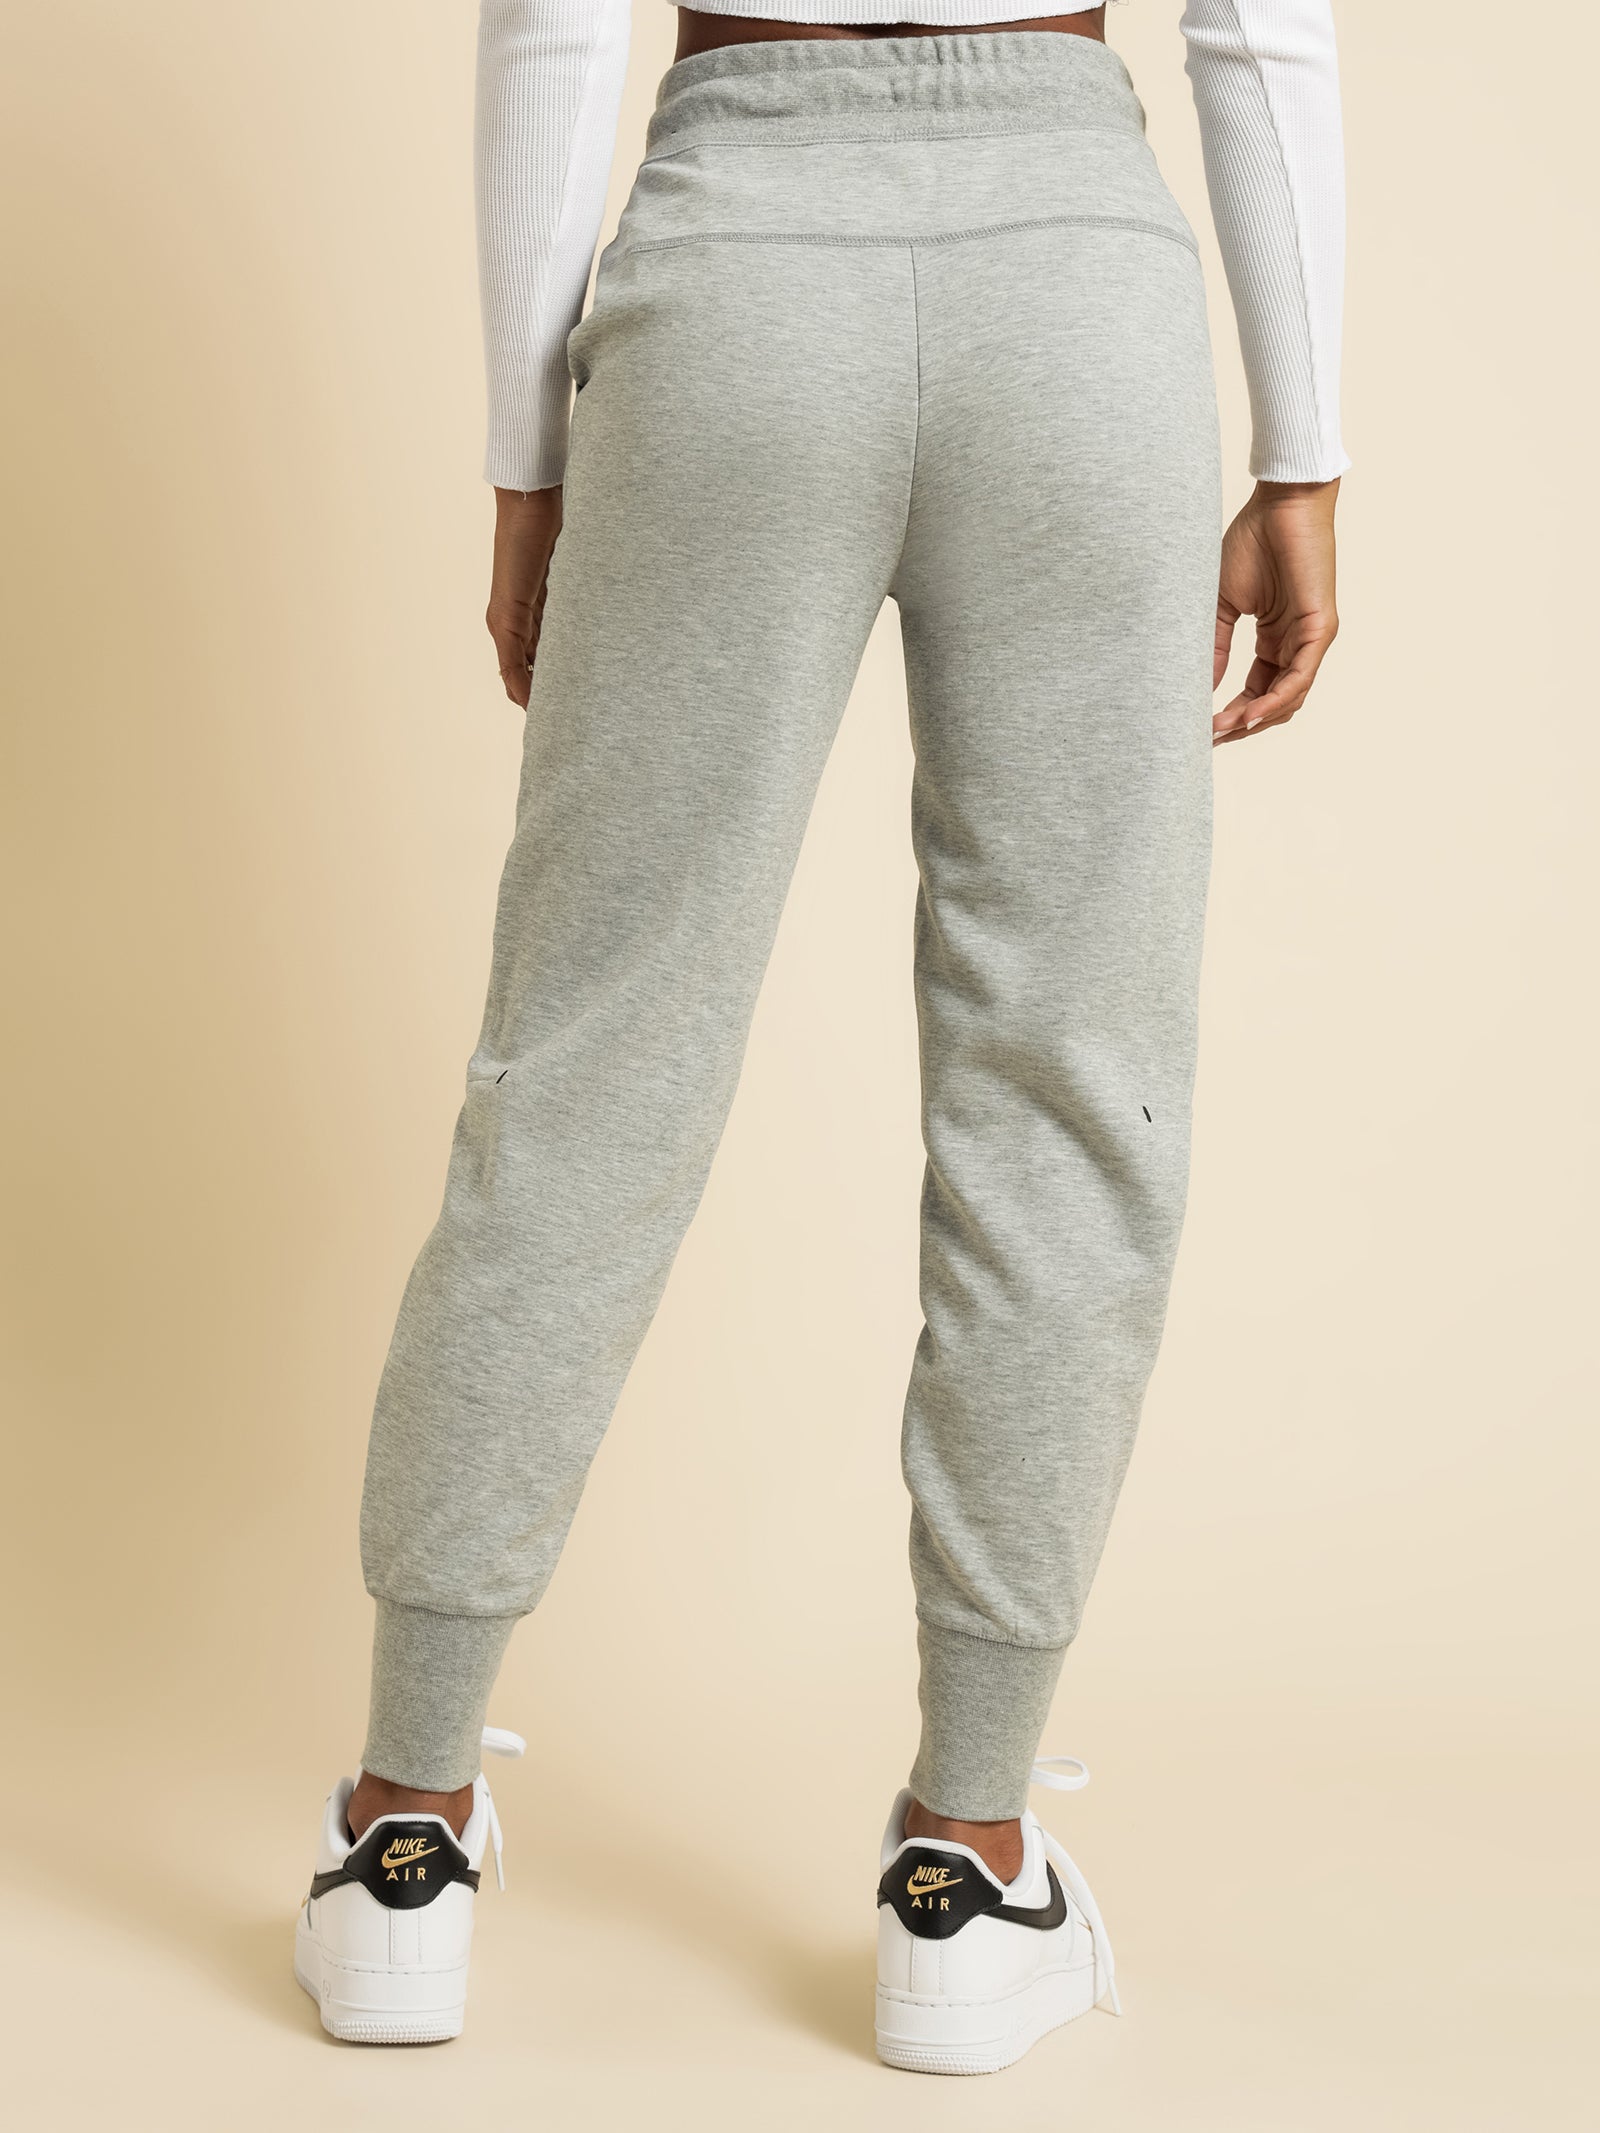 Nike Solo Swoosh Men's Fleece Pants | Millennium Shoes